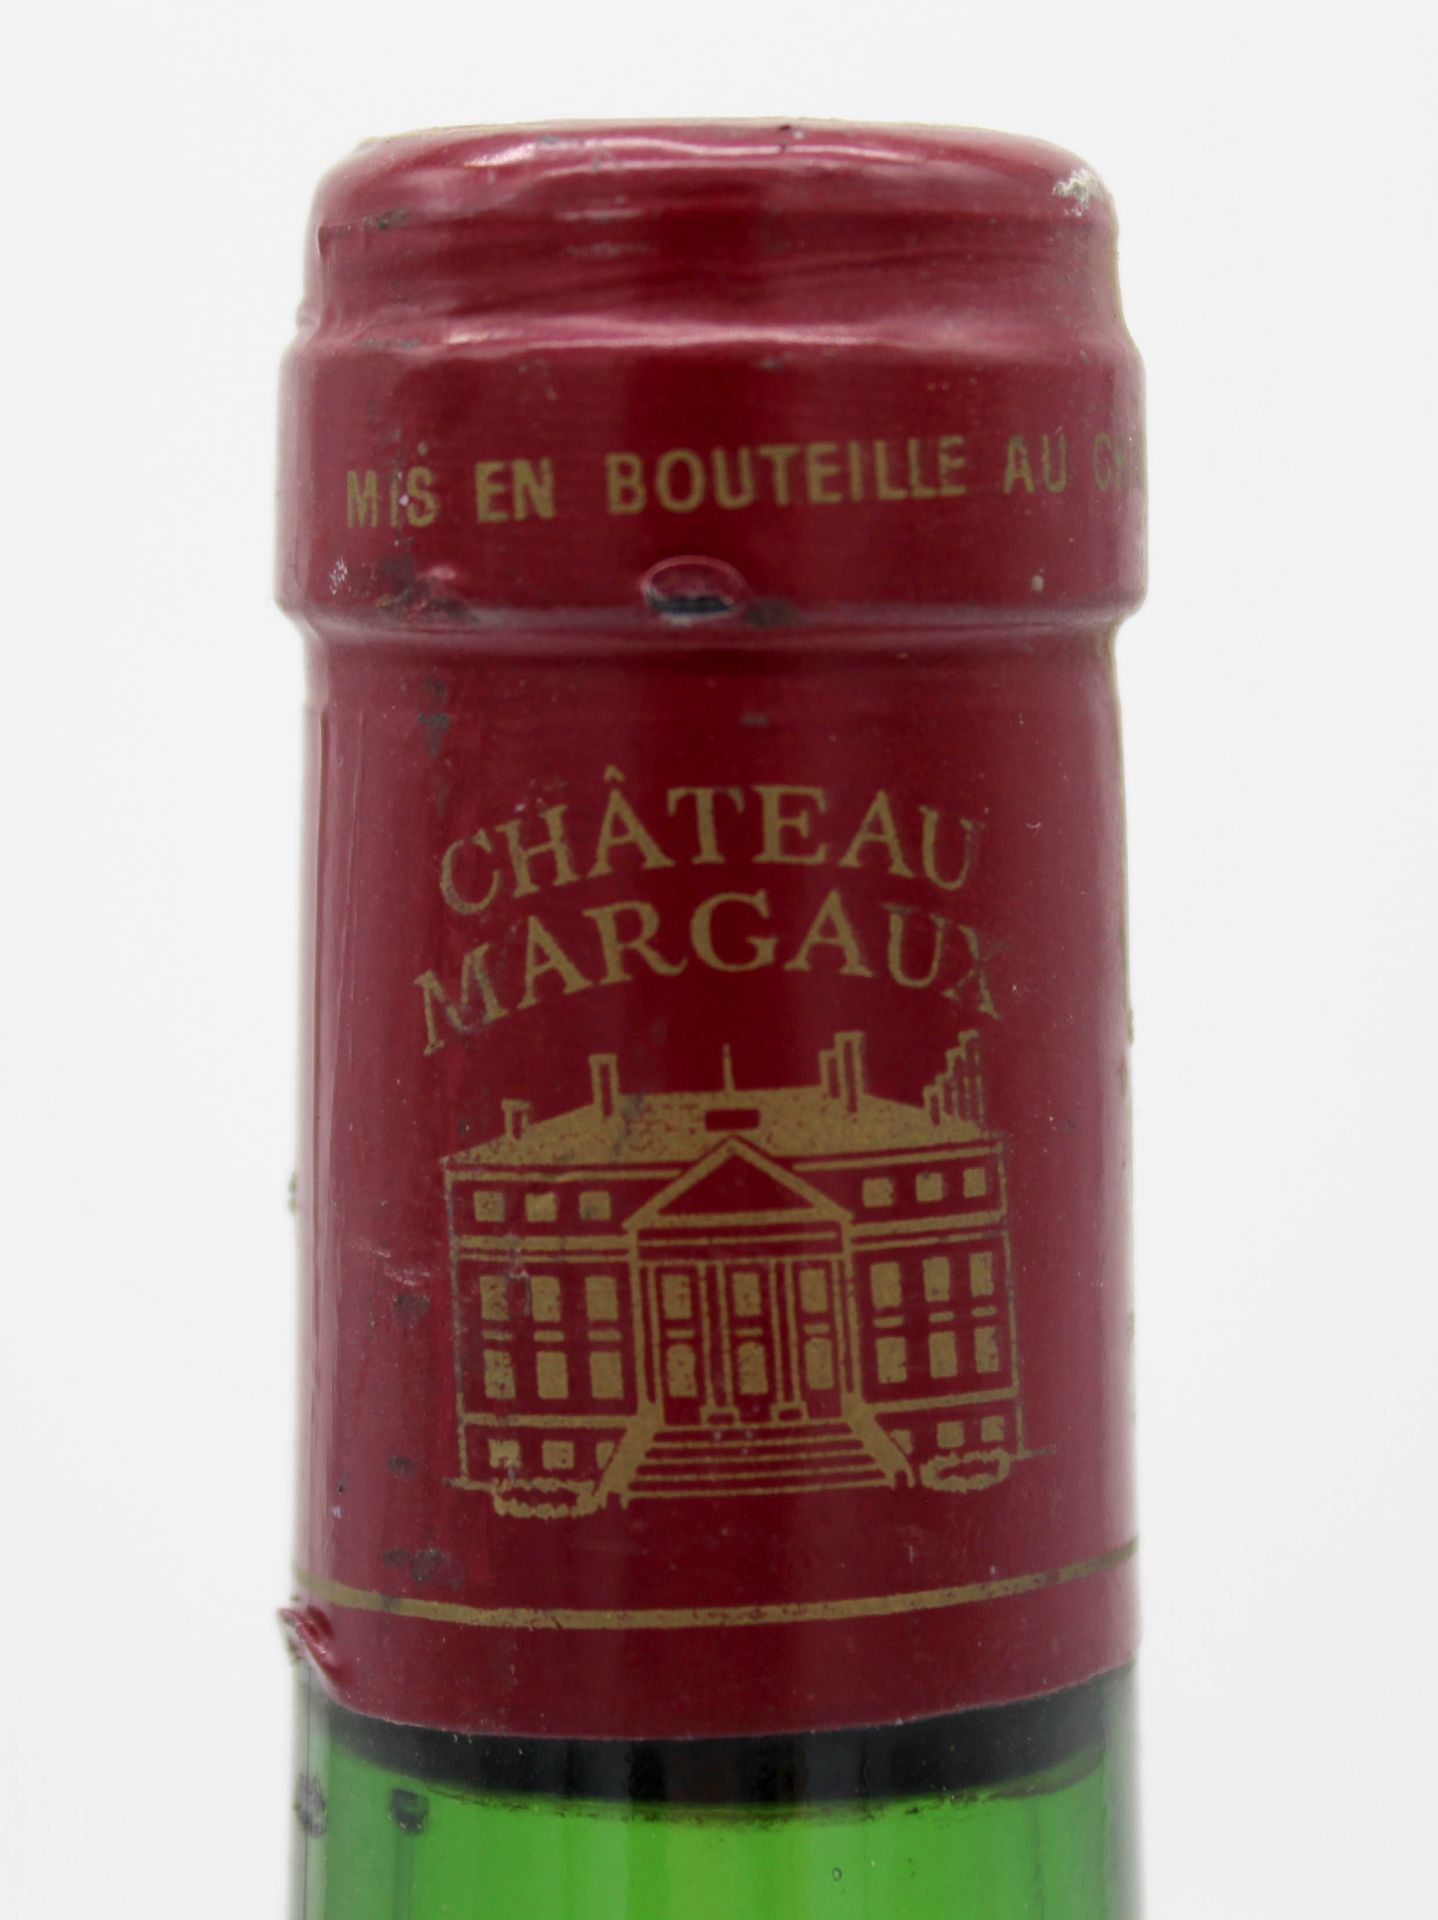 1982 Chateau Margaux, Margaux AOC, France. Eine ganze Flasche. - Bild 9 aus 10